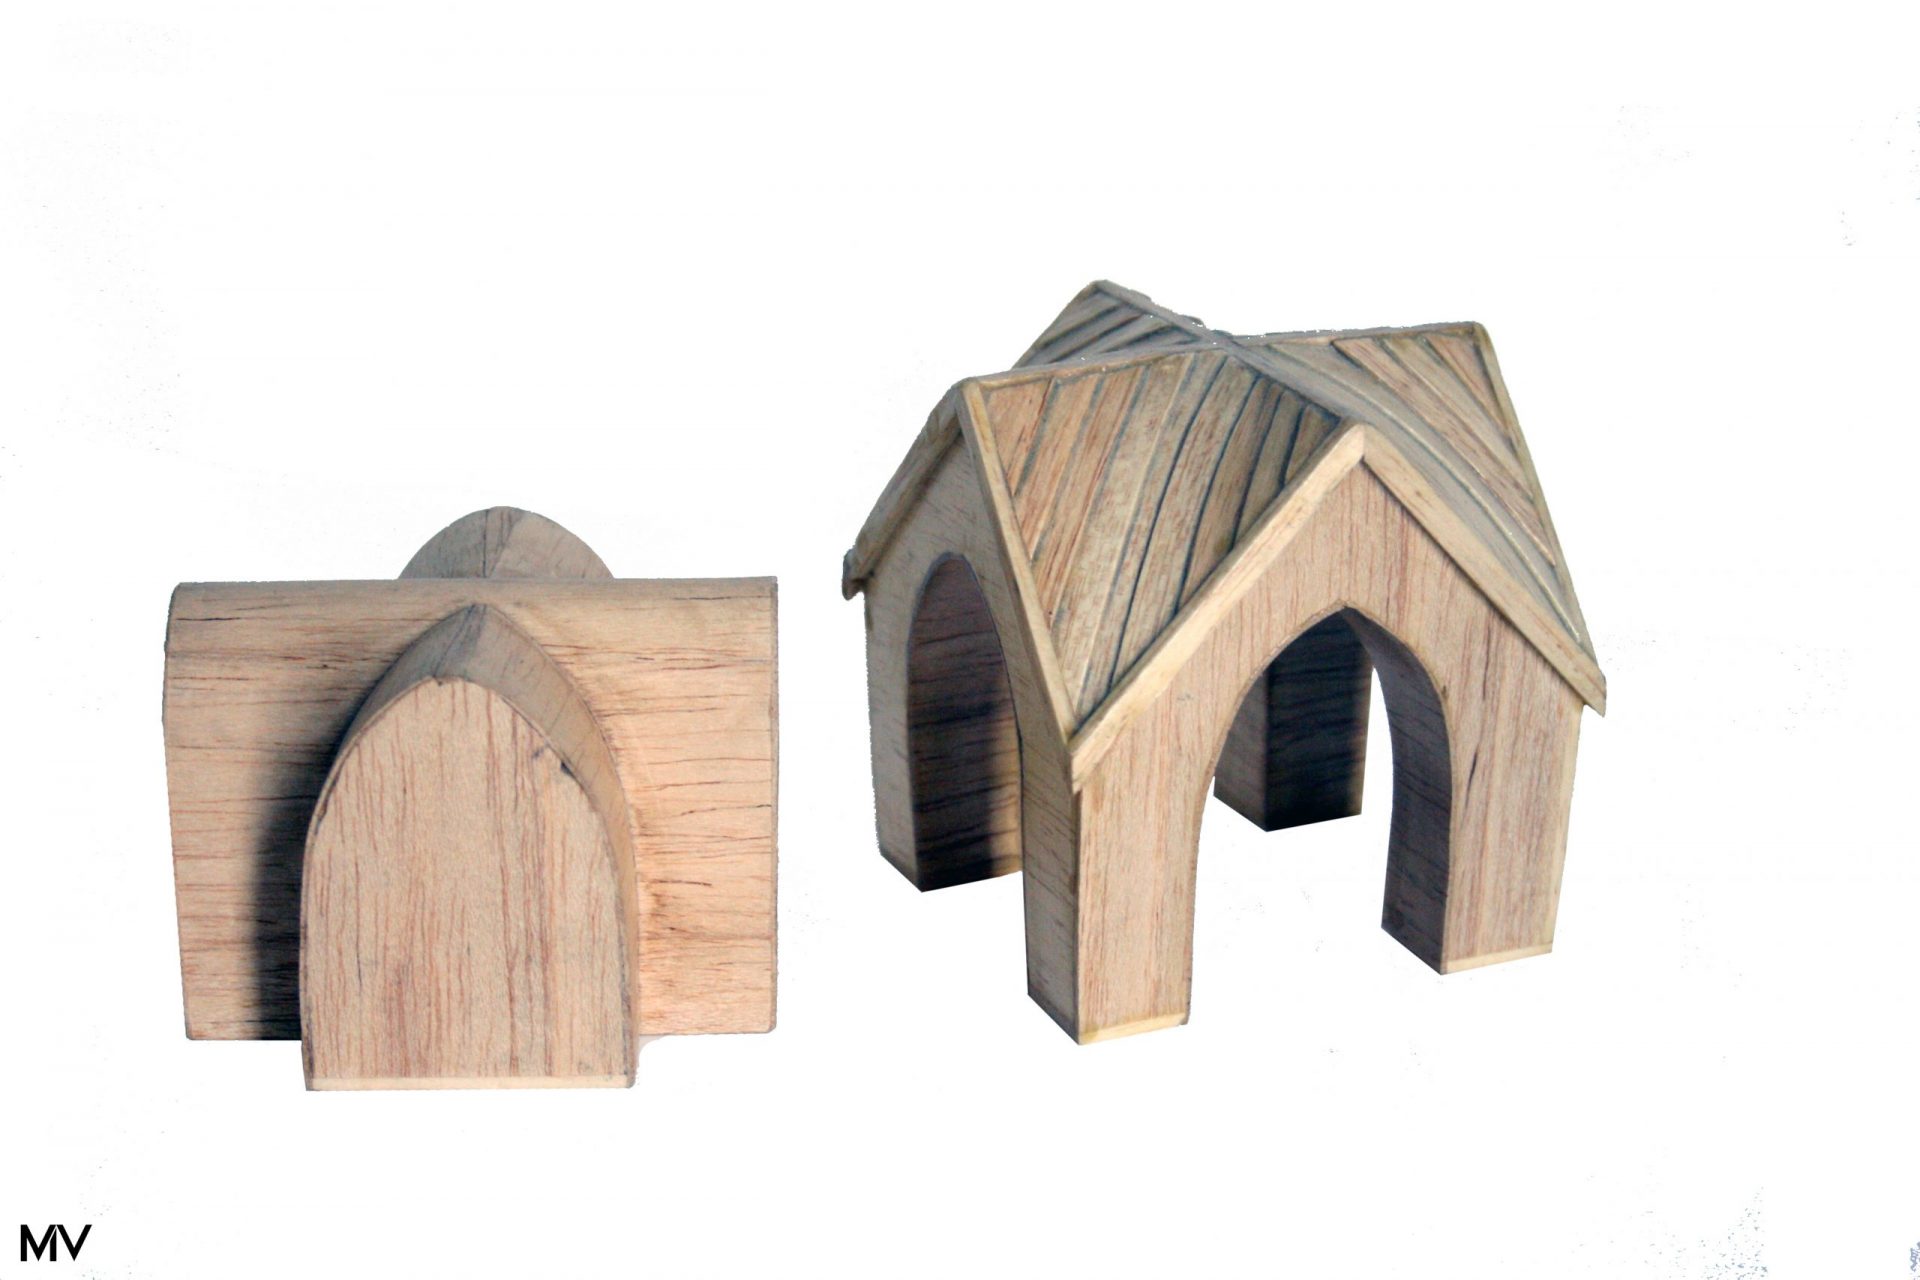 Maquette d'architecture expérimentale en bois, plein/vide, toiture double courbure. M.v.W